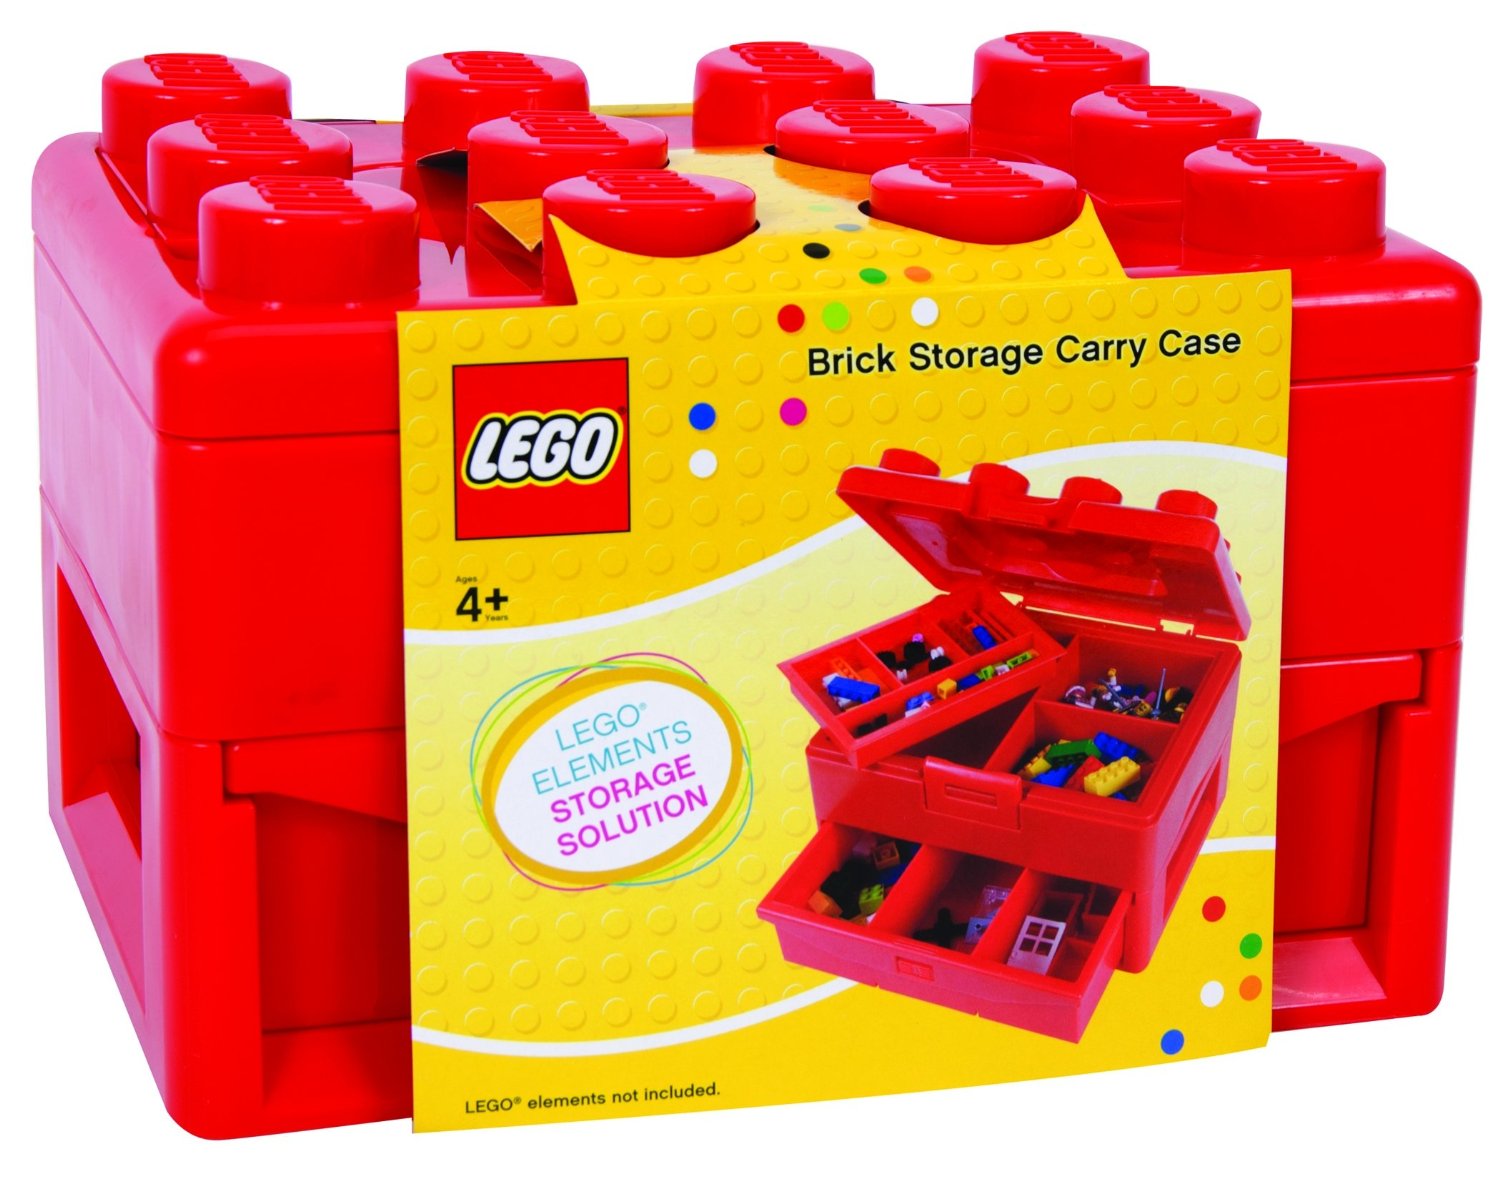 lego box organizer